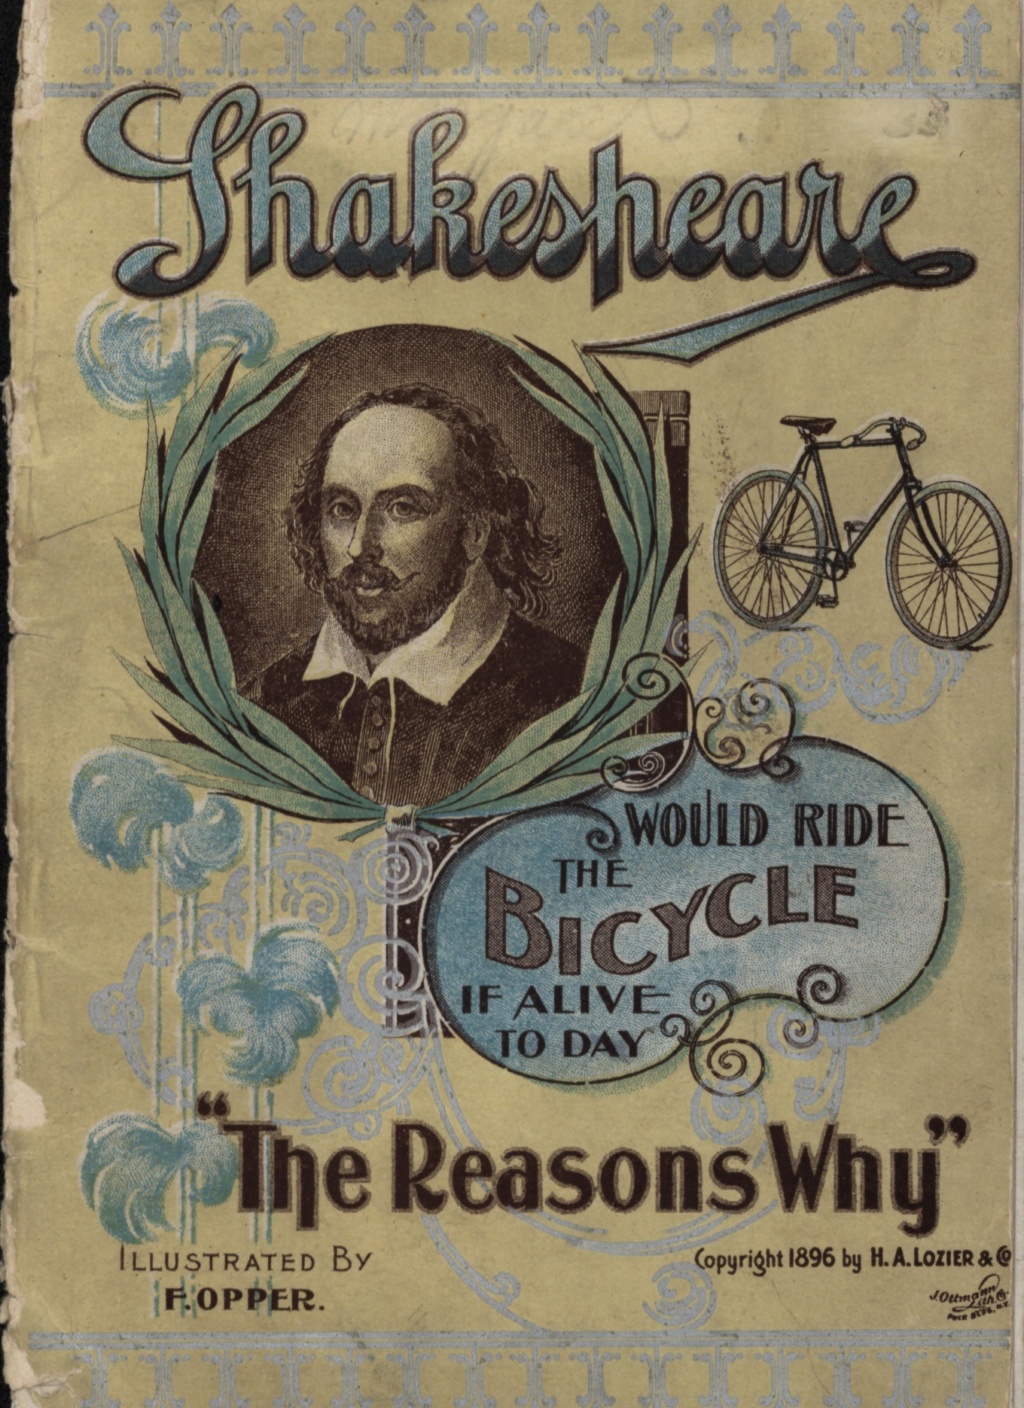 vélo - CLEVELAND: et Shakespeare ferait du vélo... 1896 110